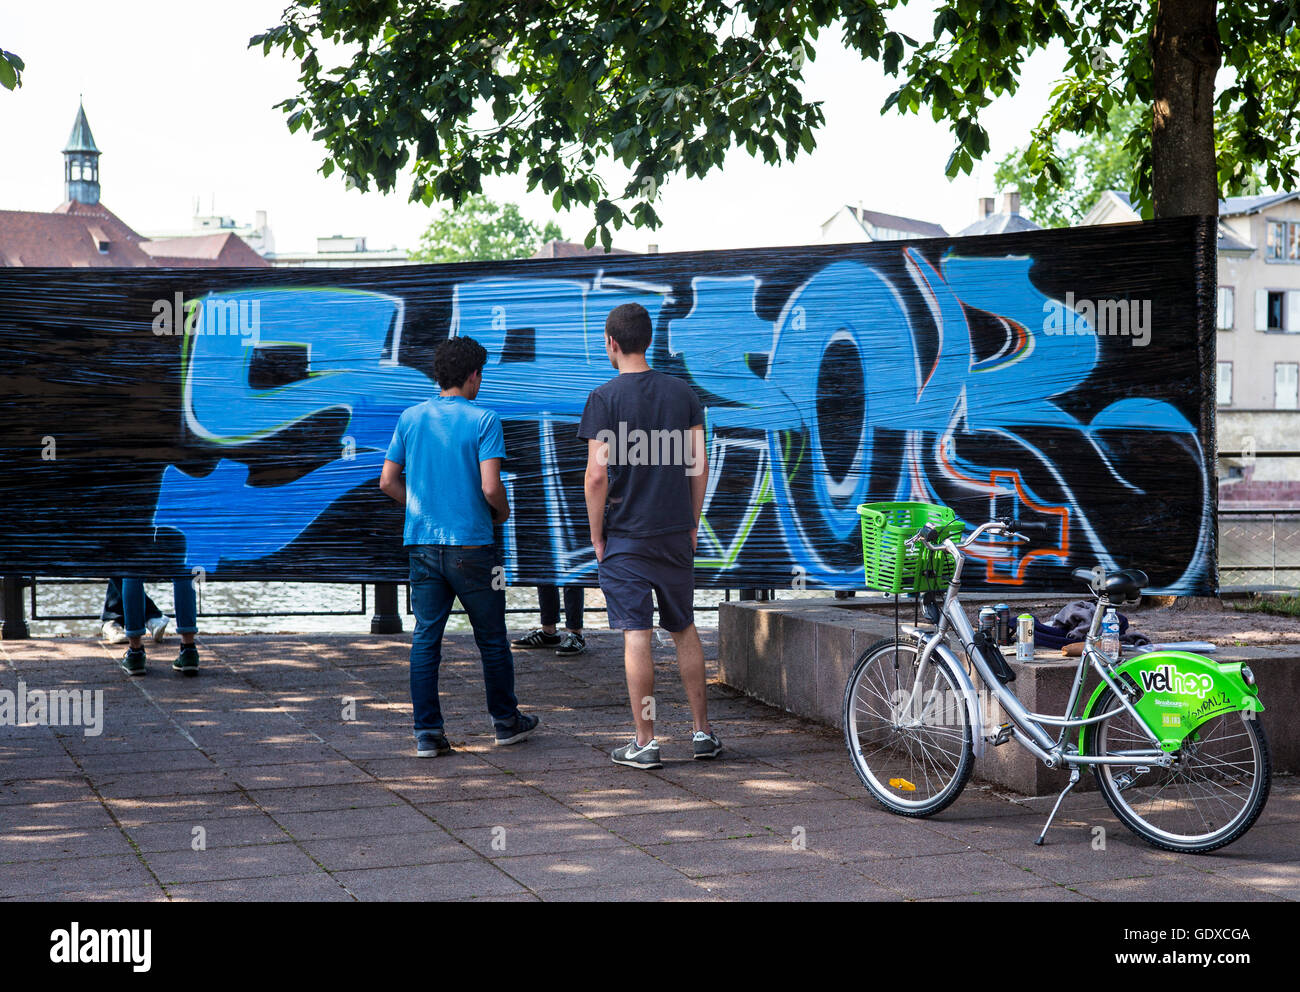 Rückansicht von Teenagern, die Graffiti auf ein Stoffbanner sprühen, Ferienlager, Straßburg, Elsass, Frankreich, Europa, Stockfoto